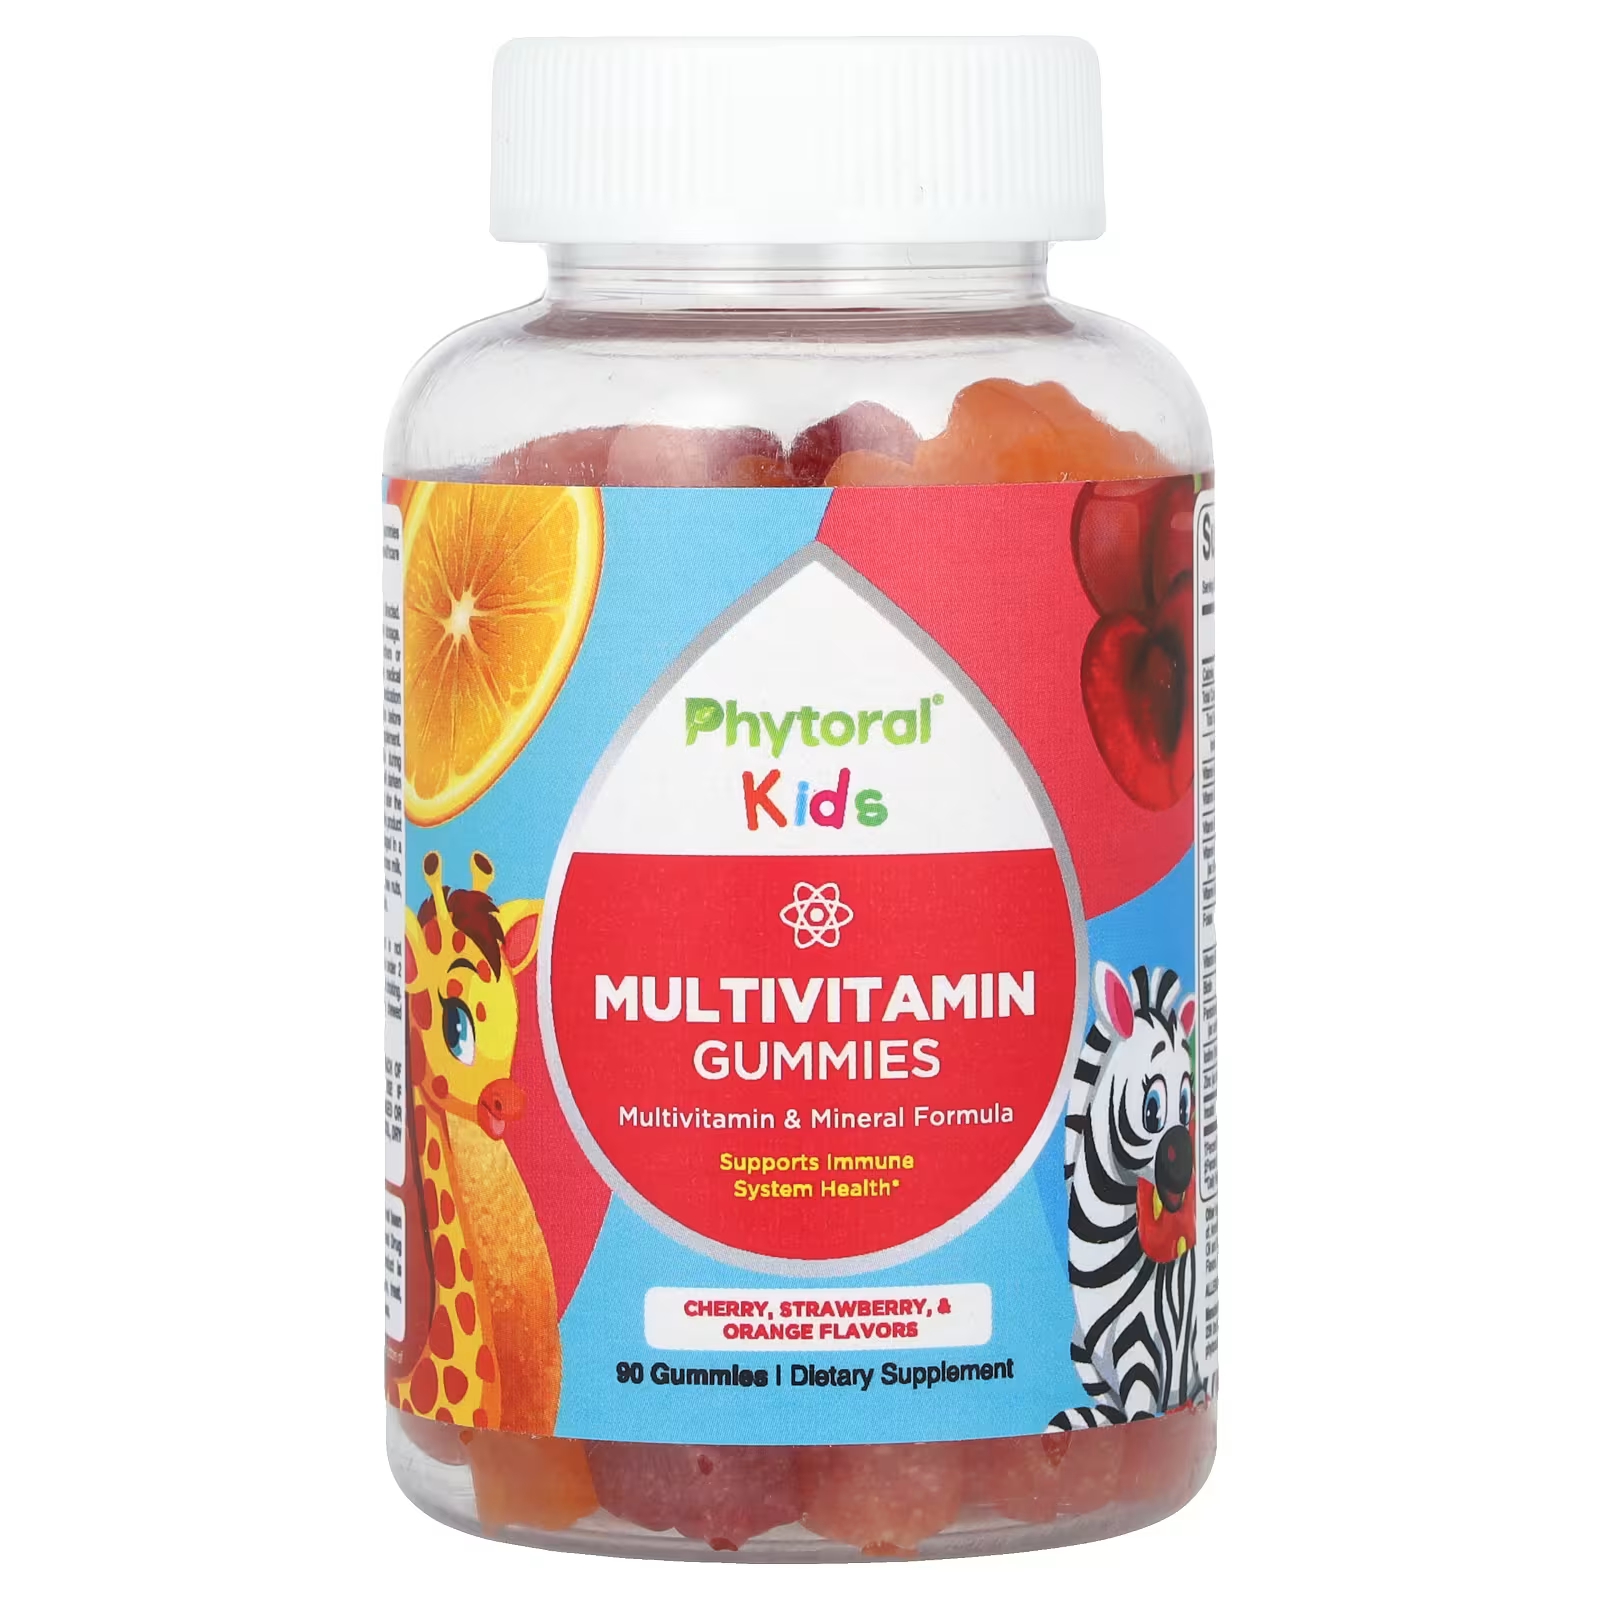 Мультивитаминны Phytoral Kids с вишней, клубникой и апельсином, 90 штук dr mercola жевательные мультивитамины для детей 60 таблеток